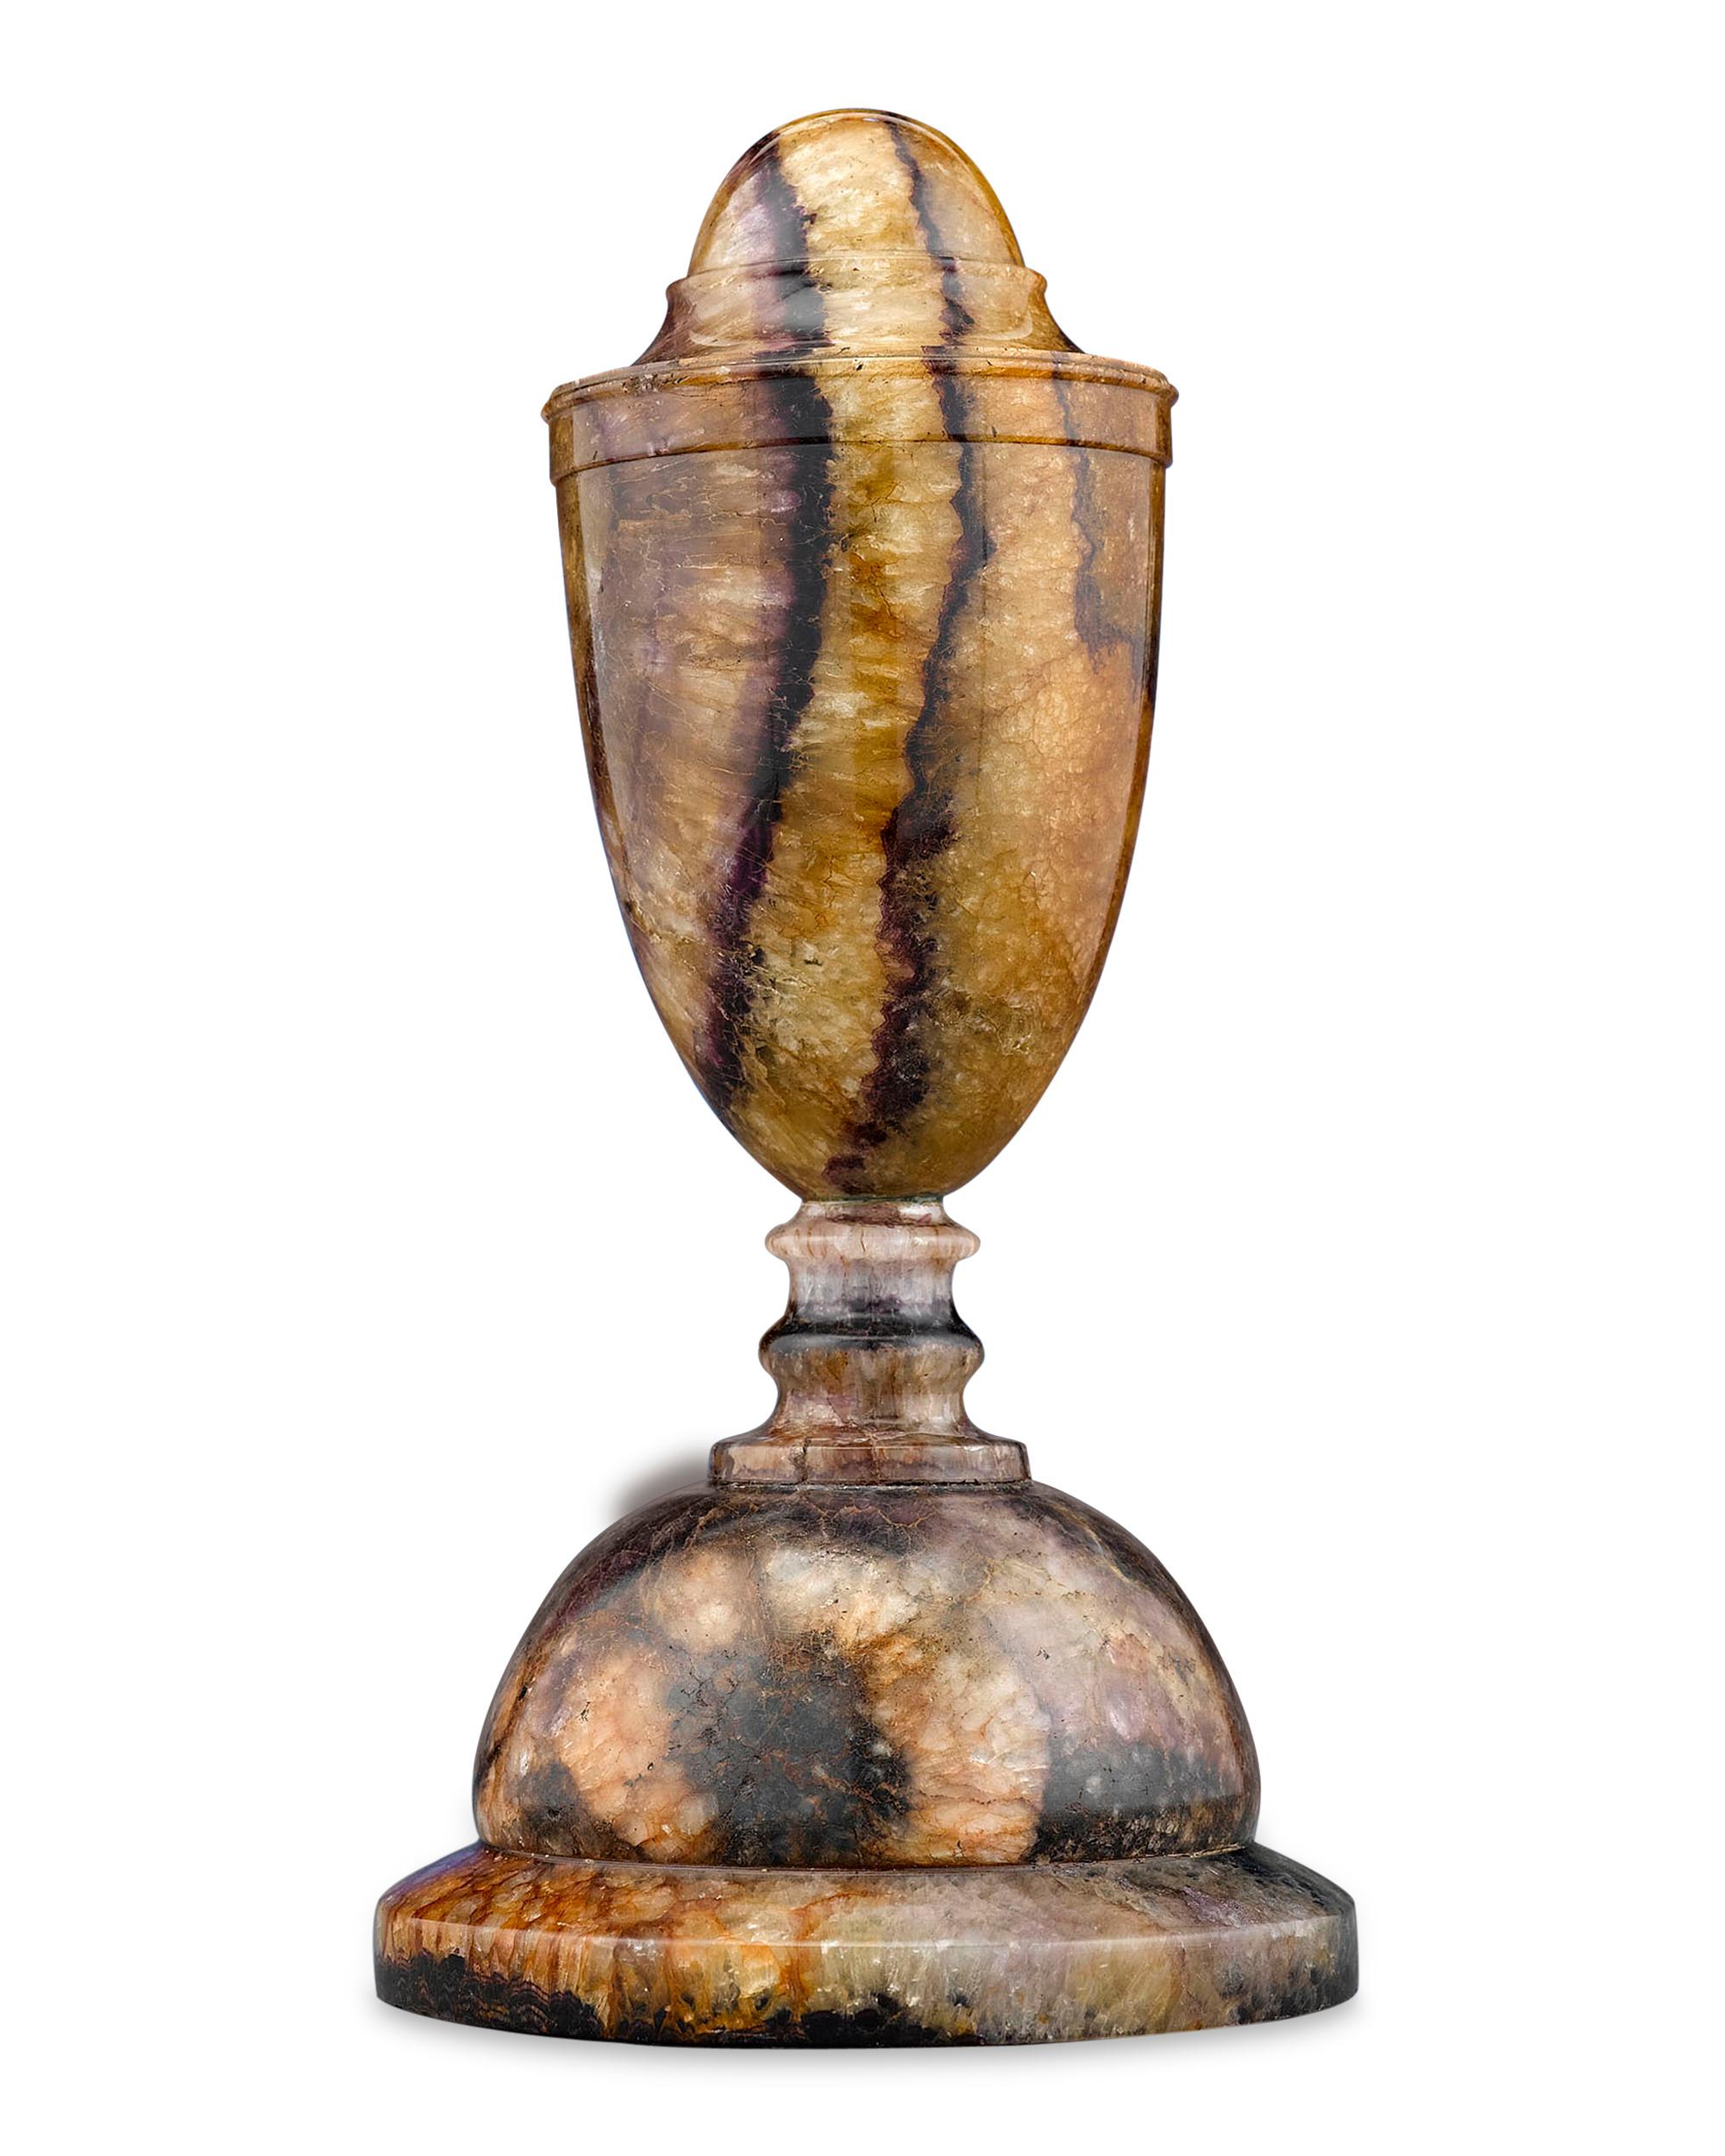 Cette magnifique urne décorative est sculptée dans du sparring Blue John Derbyshire rare, provenant de la caverne Blue John, aujourd'hui disparue, dans le Derbyshire, en Angleterre. Fabriquée dans une forme d'inspiration classique, cette urne fermée